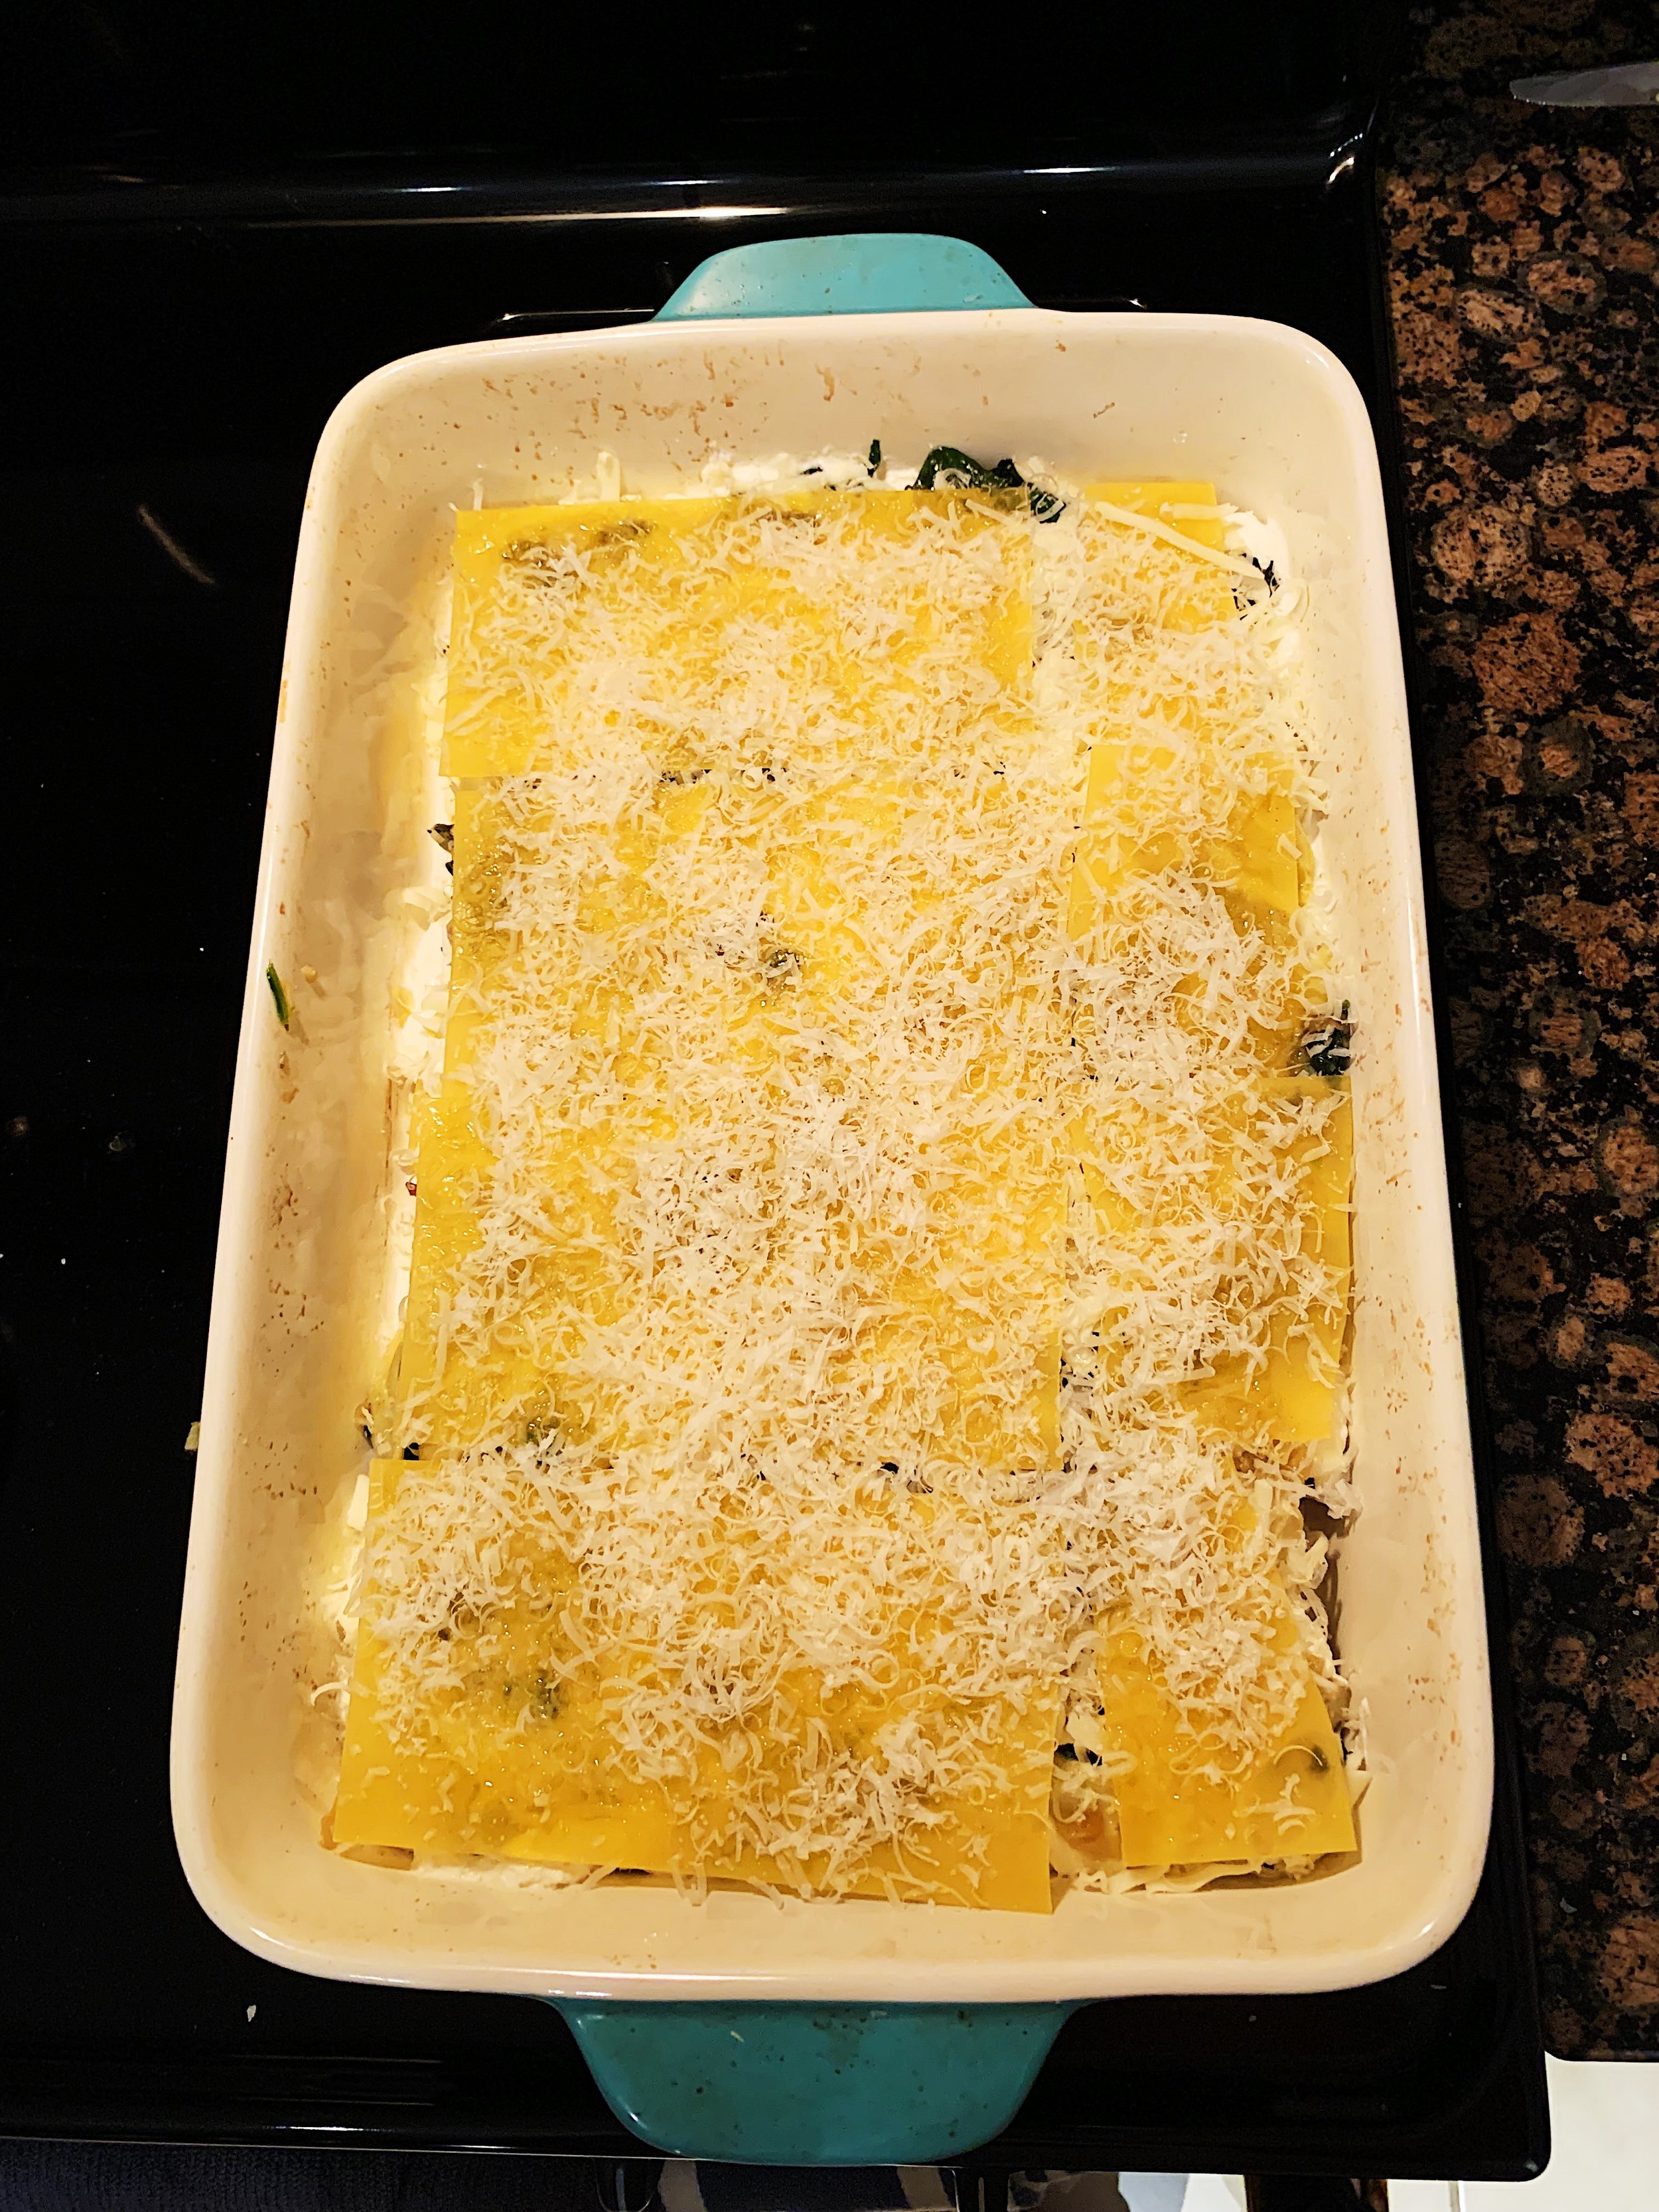 baked-pasta-artichokes-cheese-alison-roman-1.jpg